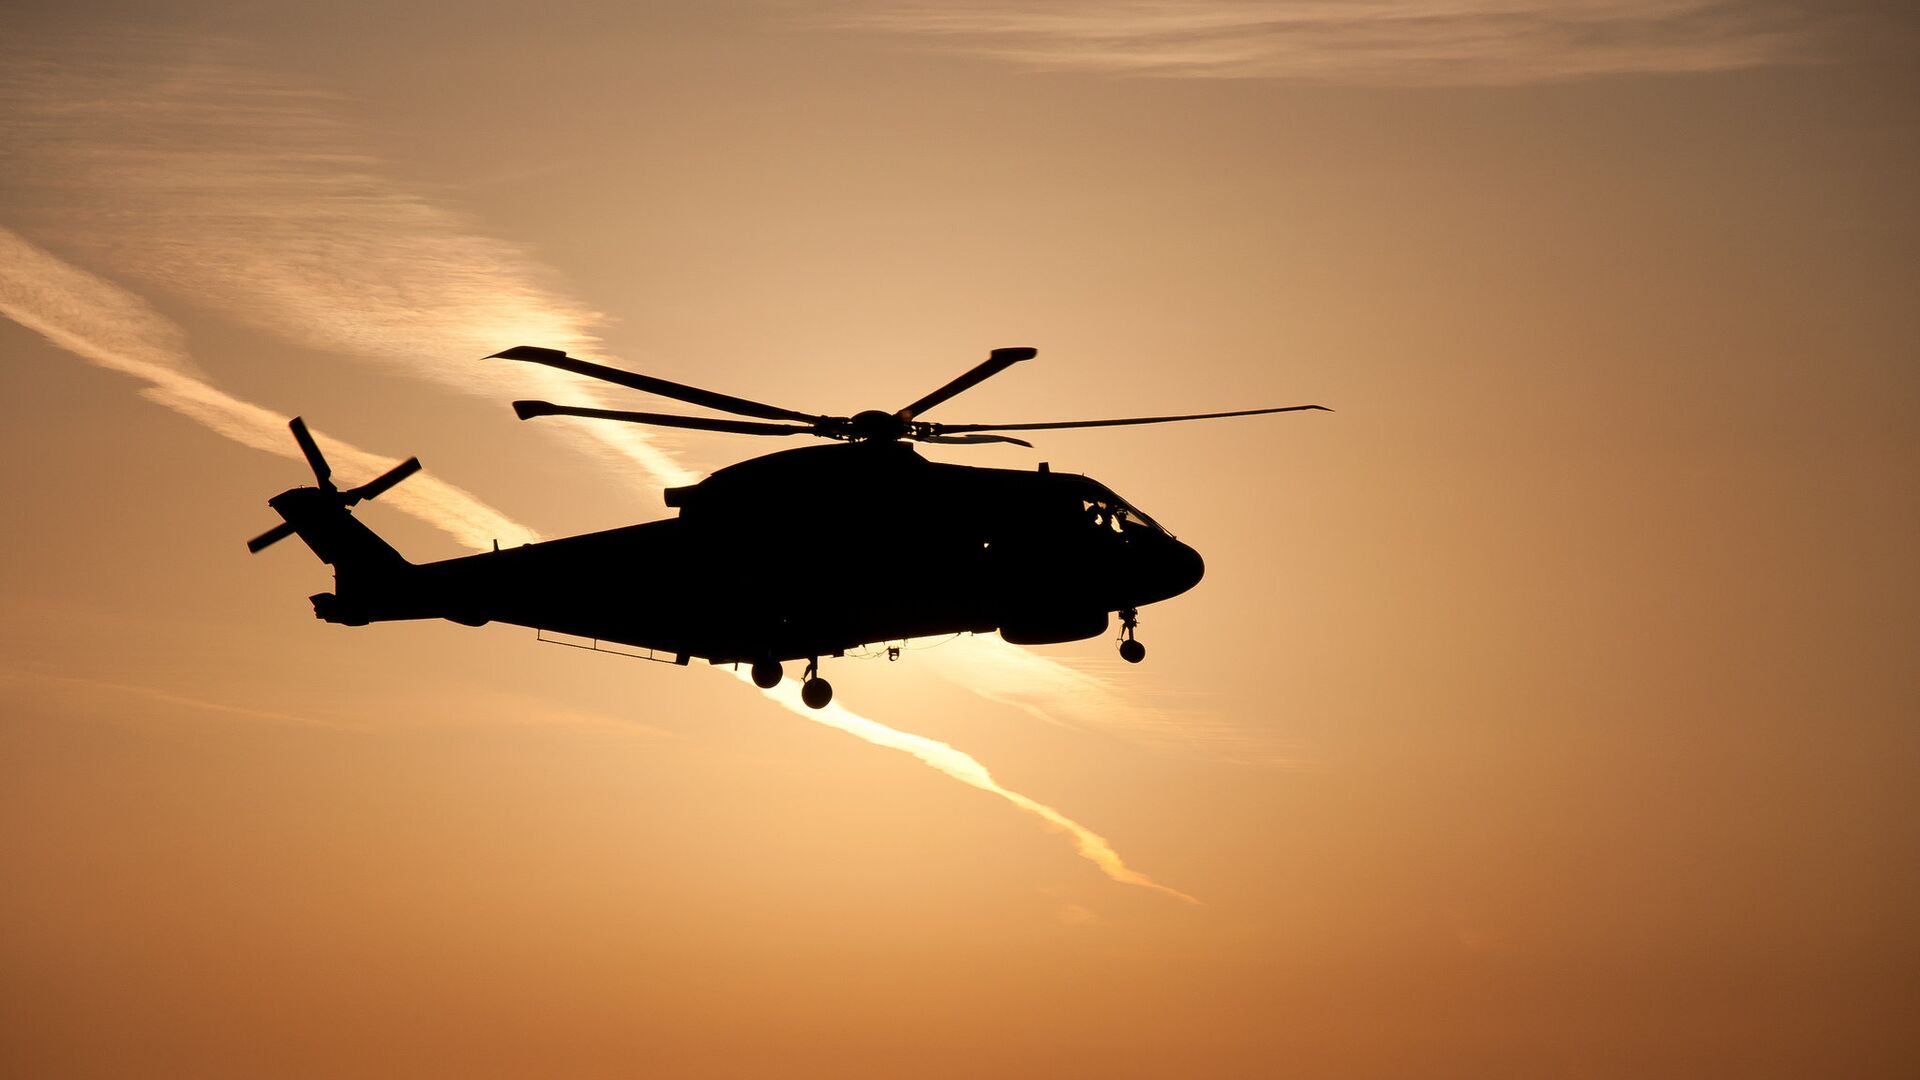 Агентство ANI: вертолет индийских ВС разиблся на севере Индии